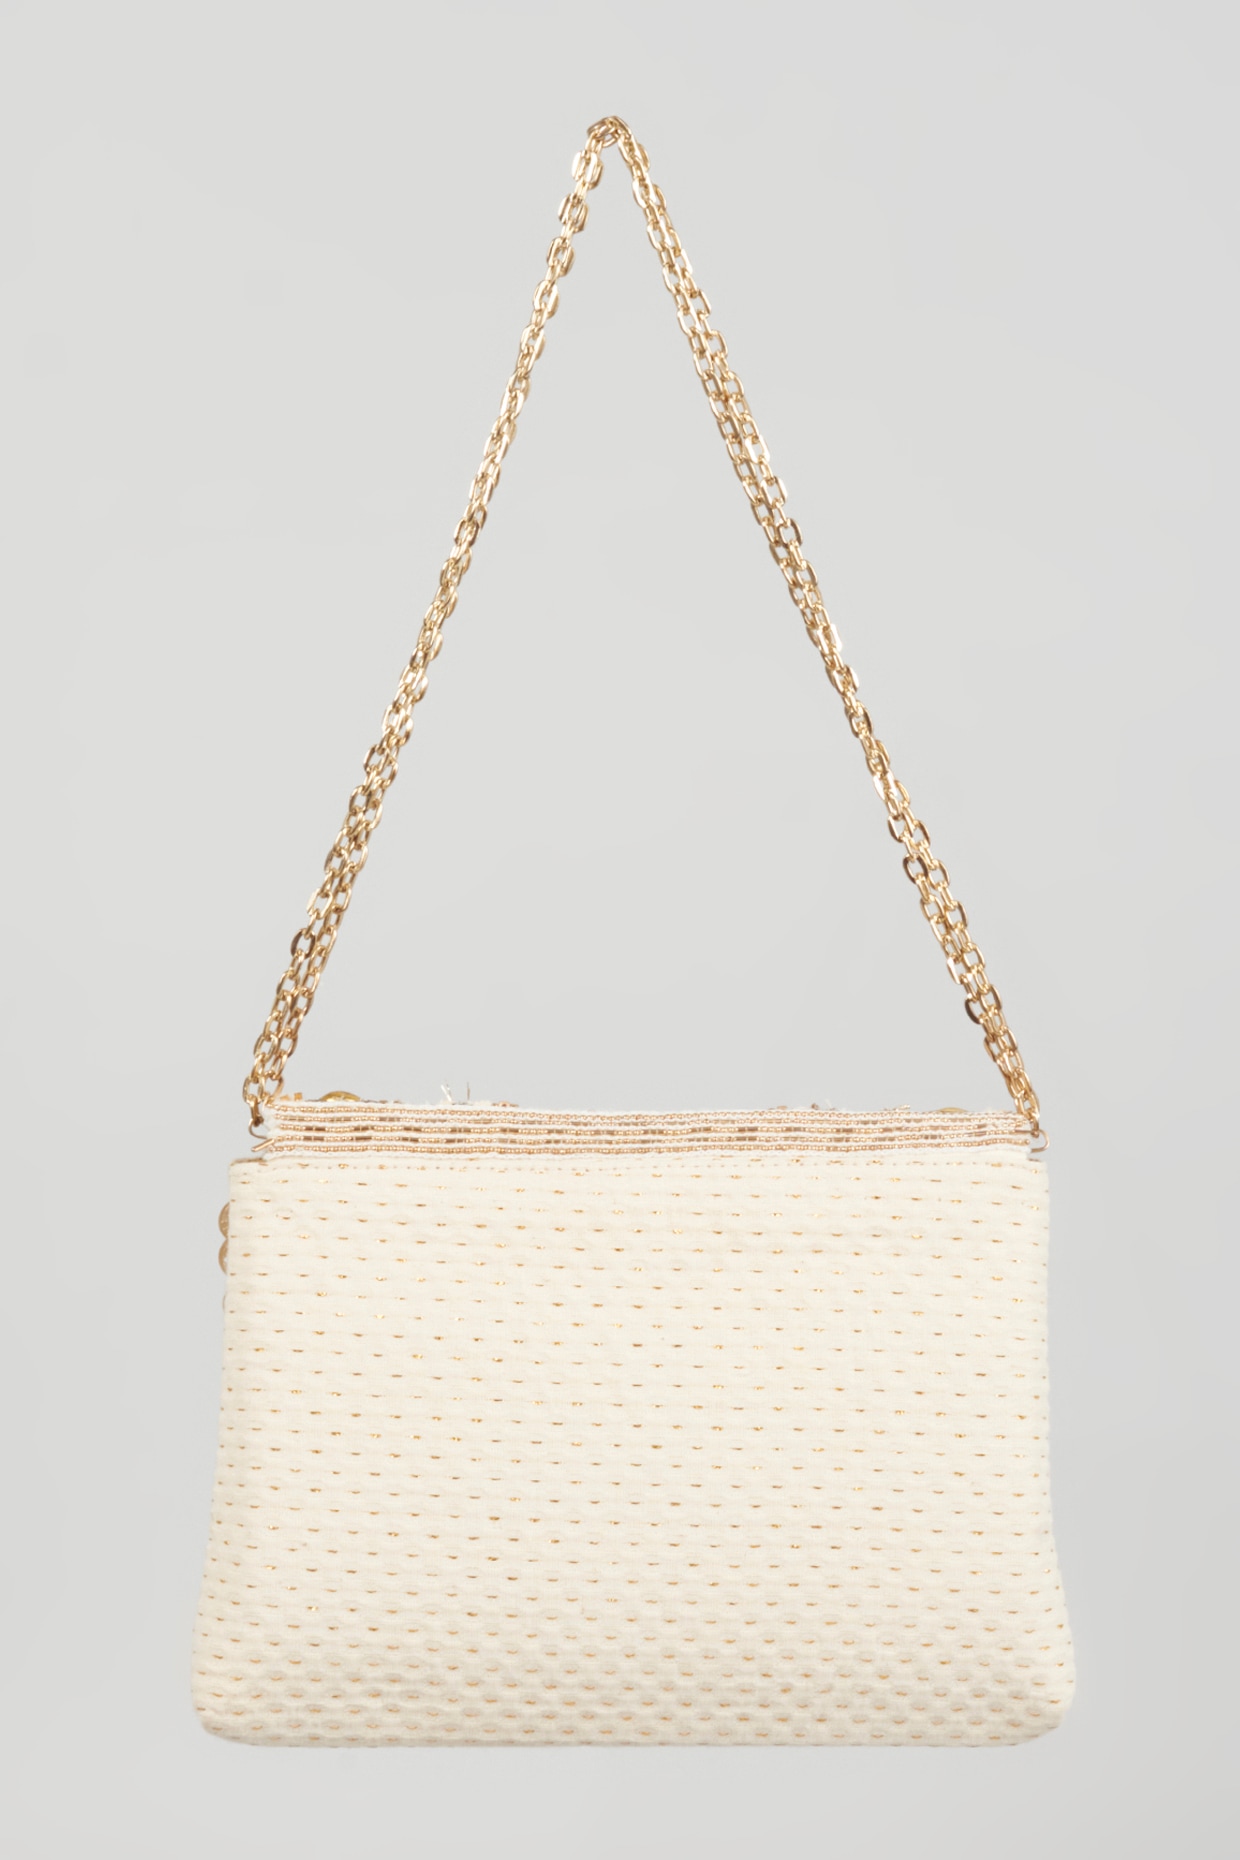 Triangle Shoulder Handbags | Bag Triangle Women Fashion | Triangle Purses  Women - 2023 - Aliexpress